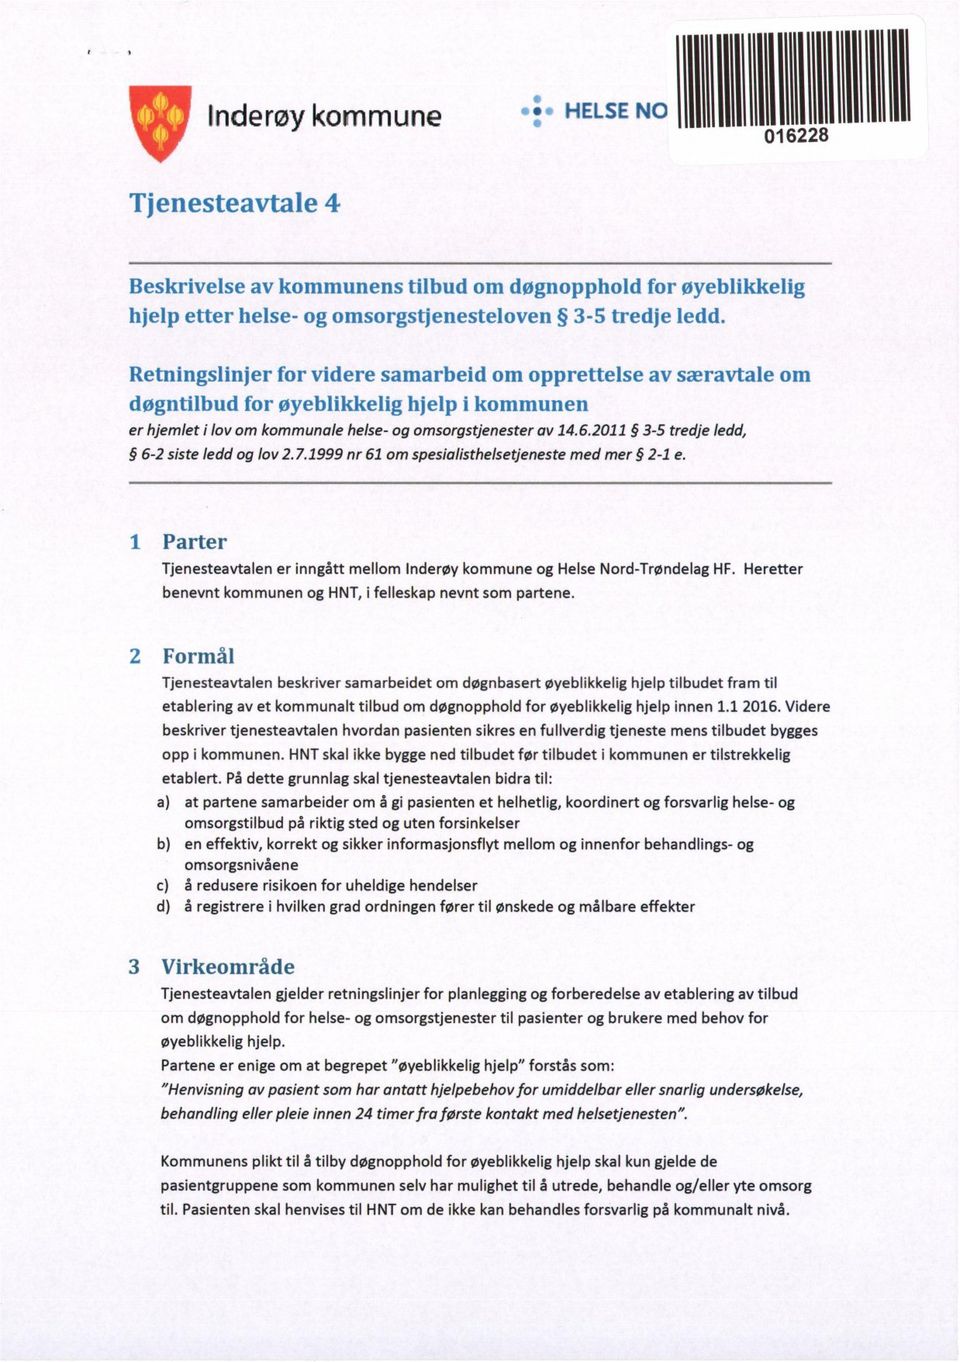 2011 3-5 tredje ledd, 6-2 siste ledd og lov 2.7.1999 nr 61 om spesialisthelsetjeneste med mer 2-1 e. 1 Parter Tjenesteavtalen er inngått mellom Inderøy kommune og Helse Nord-Trøndelag HF.